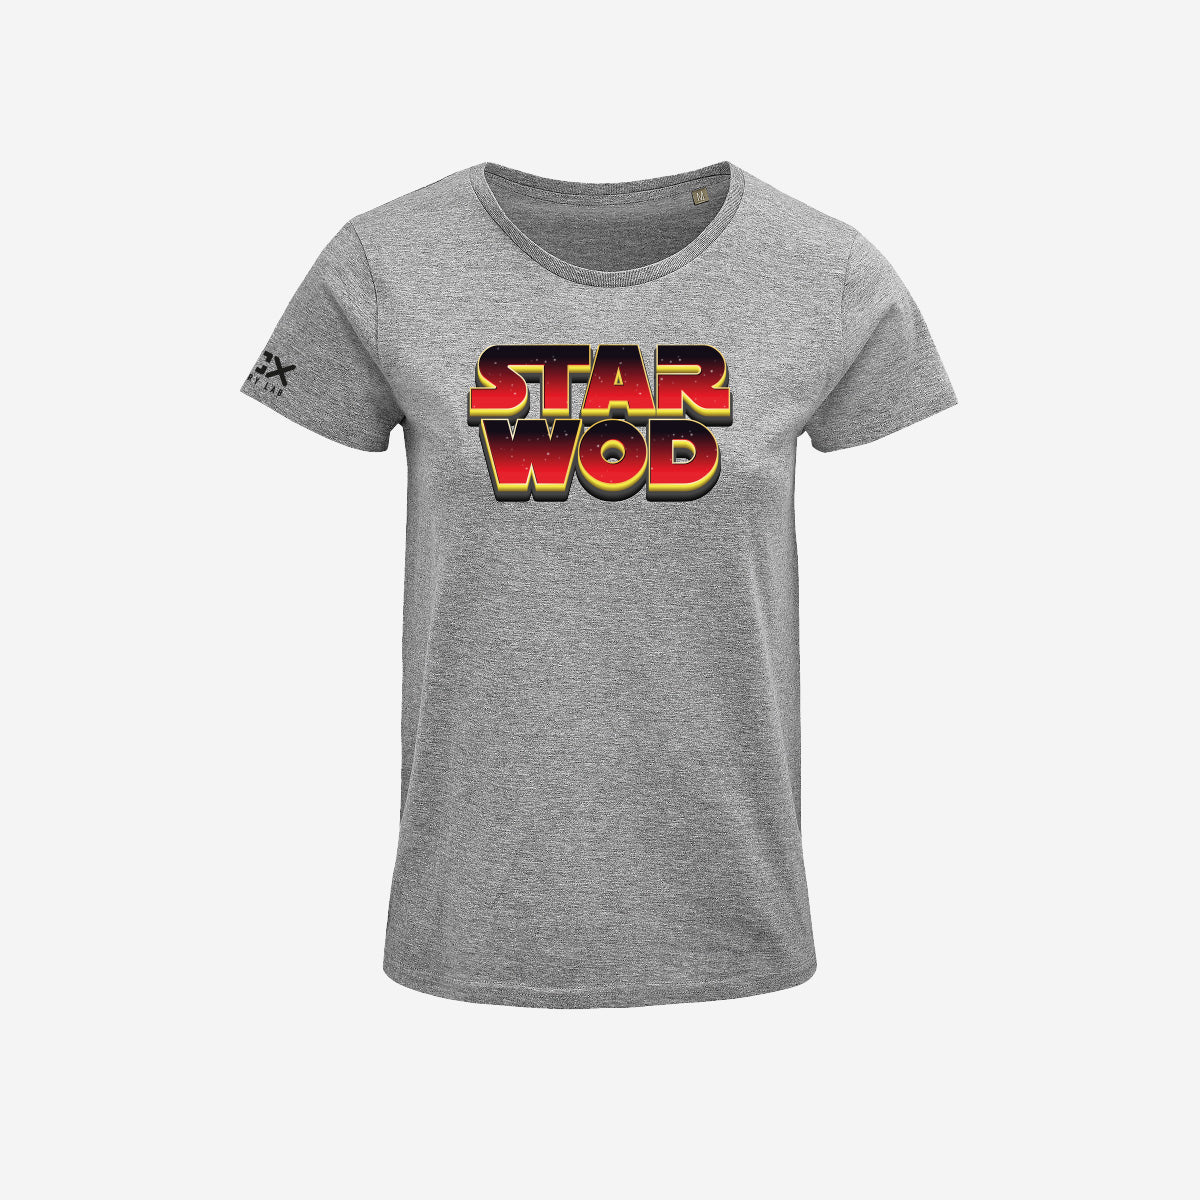 T-shirt Donna - Star Wod